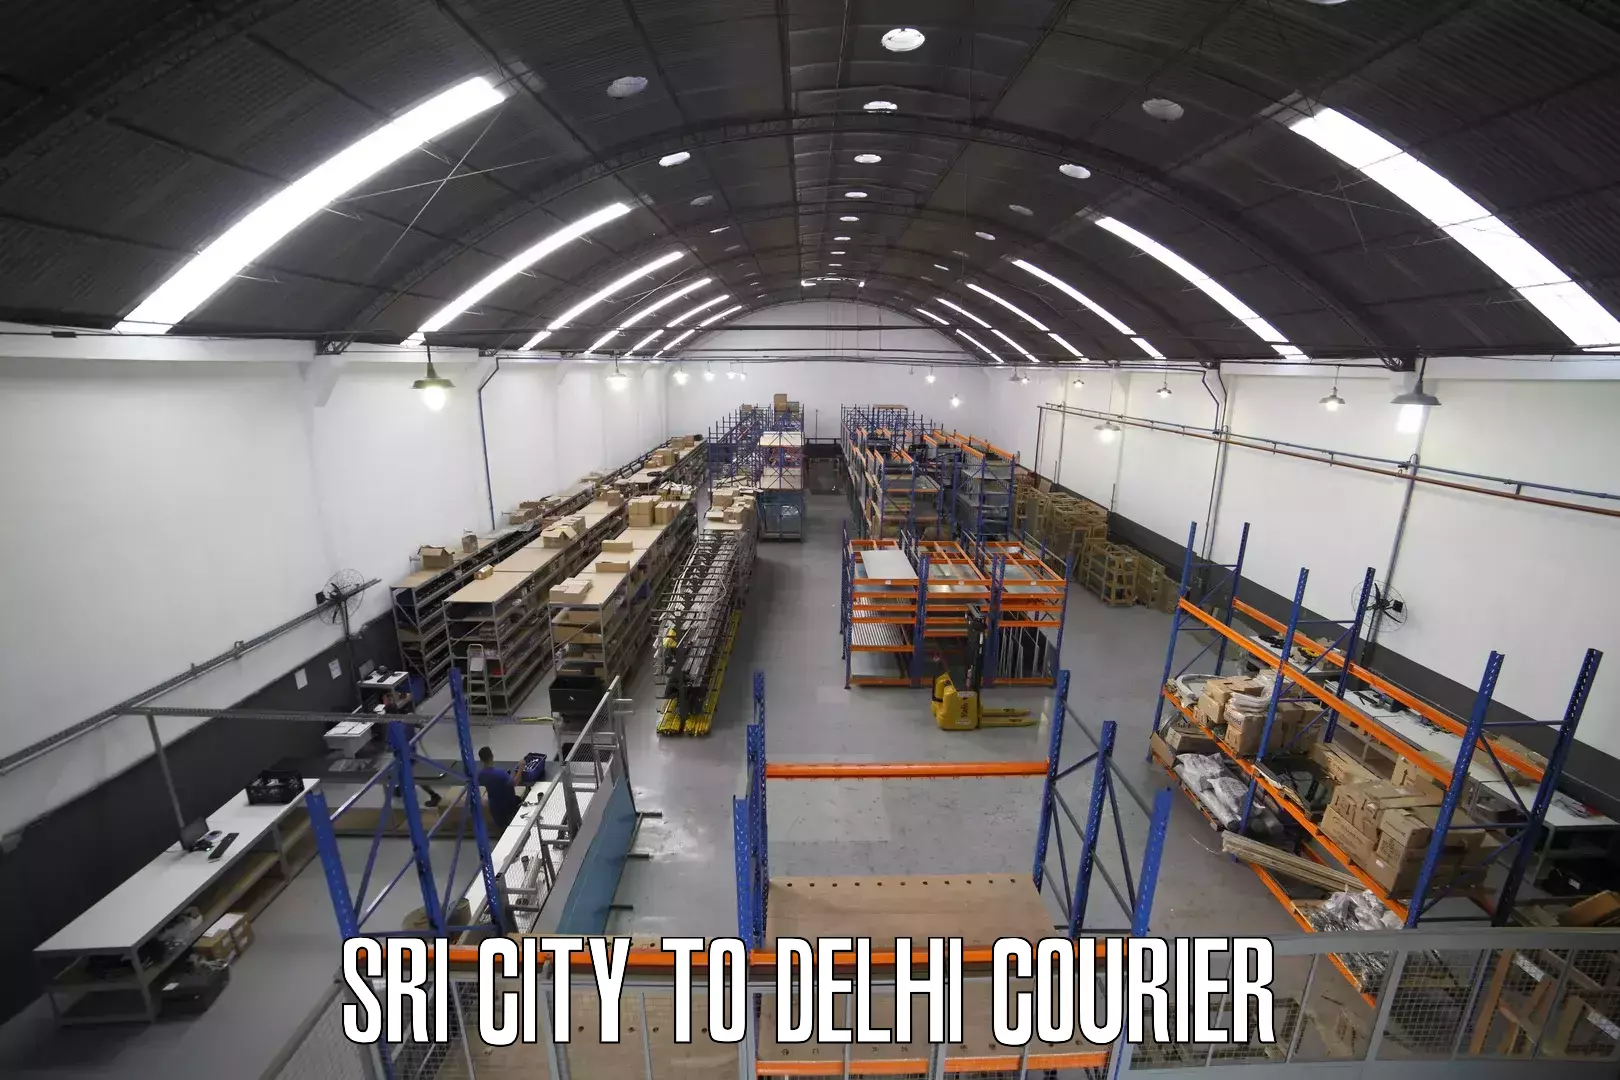 Express logistics providers Sri City to Delhi